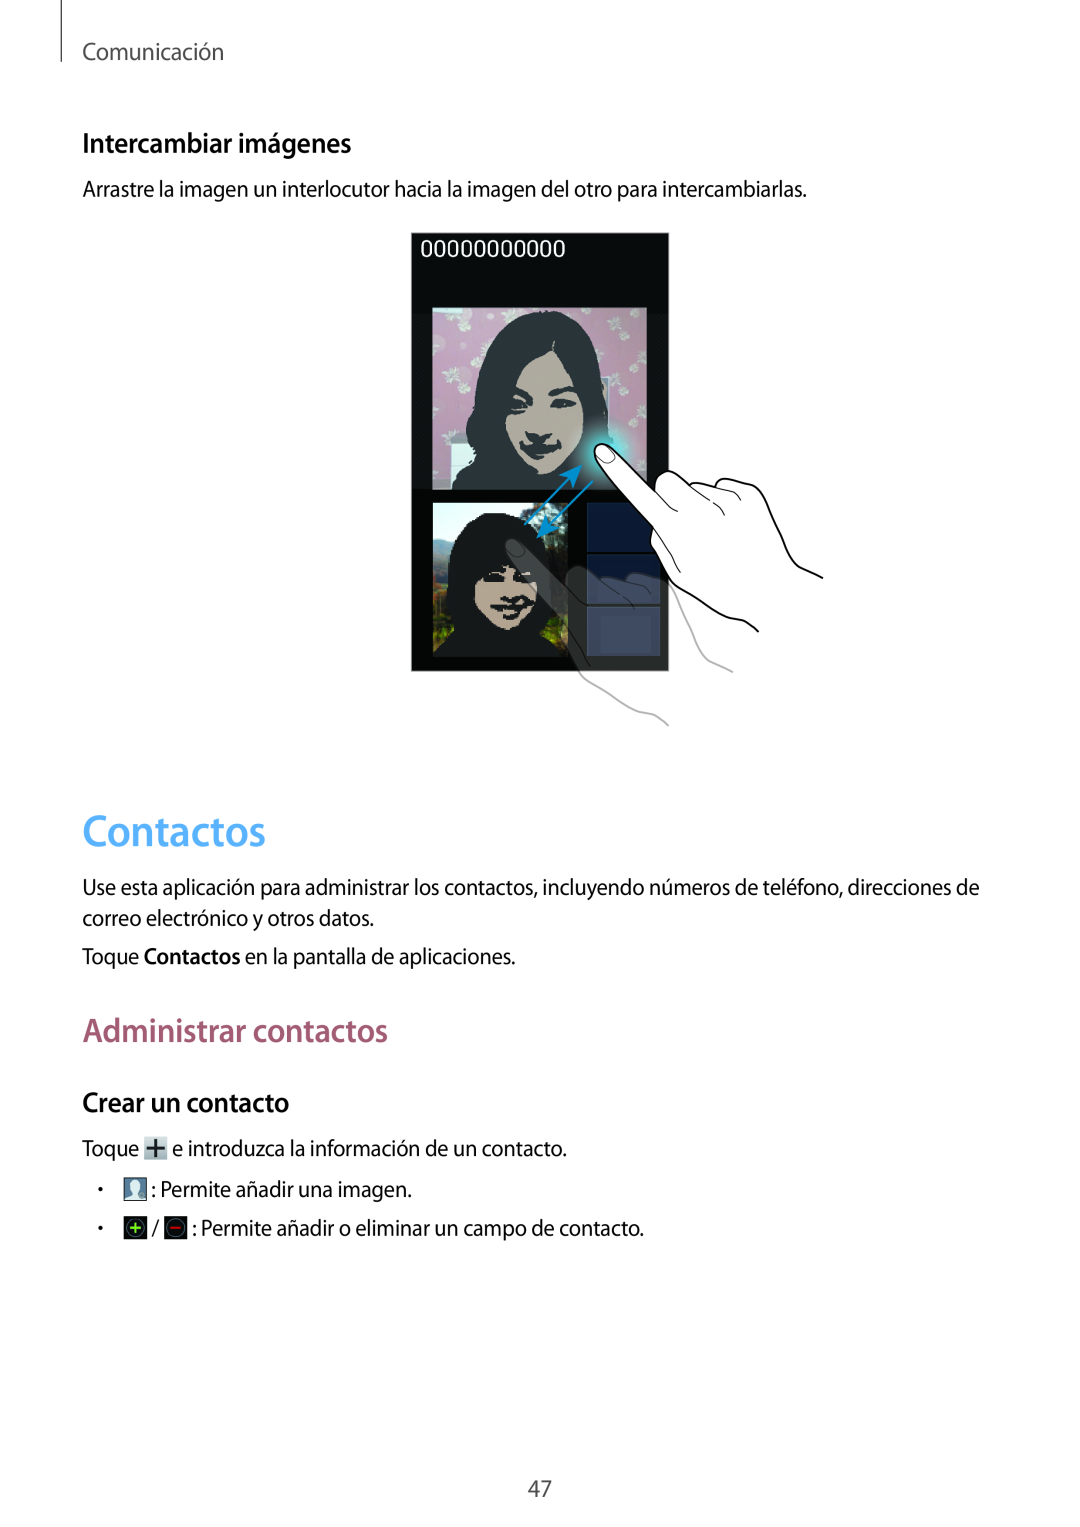 Samsung GT-I8730TAAAMN manual Contactos, Administrar contactos, Intercambiar imágenes, Crear un contacto, Comunicación 